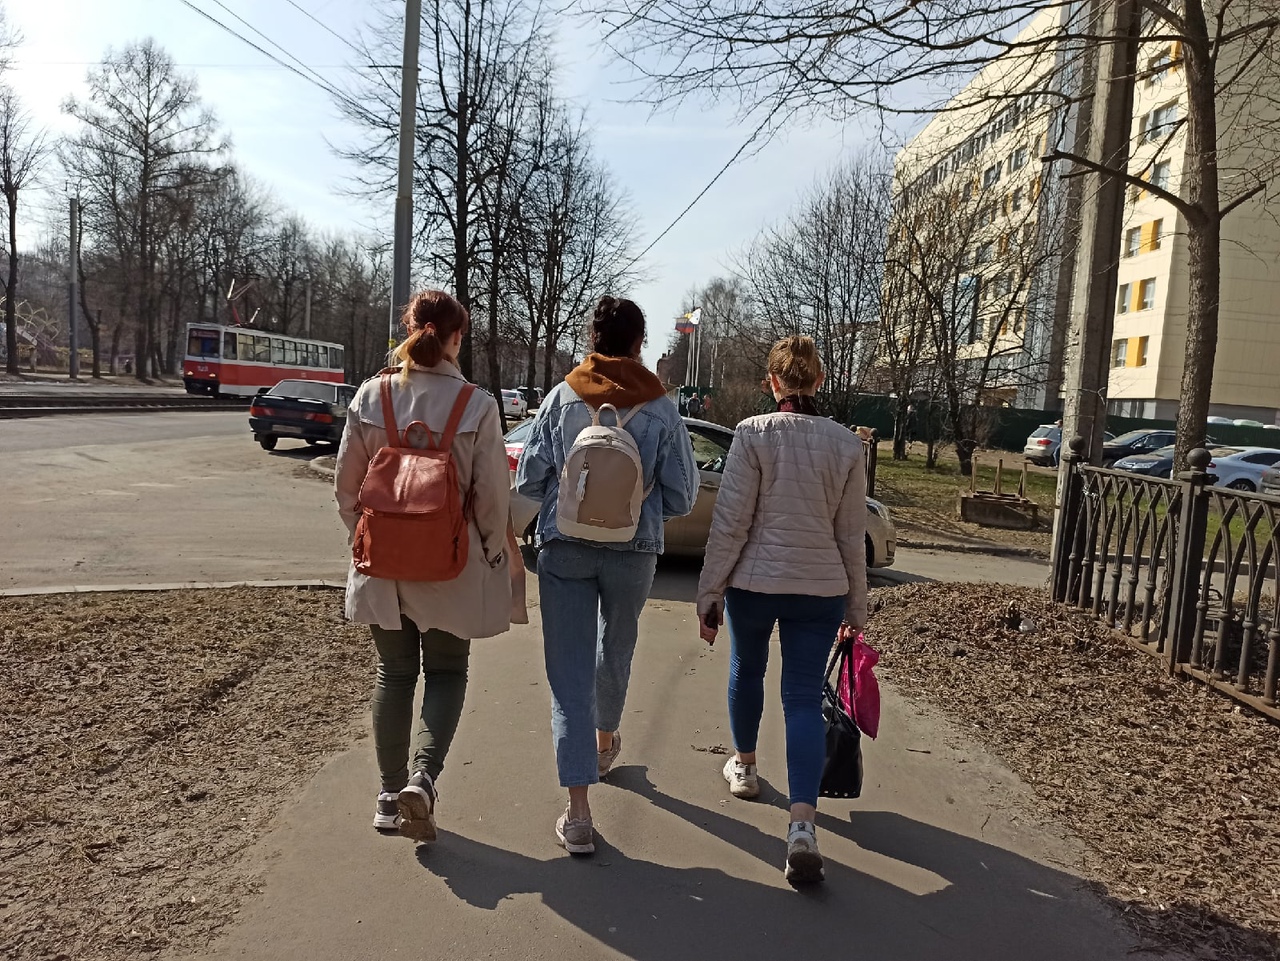 "В Ярославль явно идёт тепло": спойлер - новость не о погоде